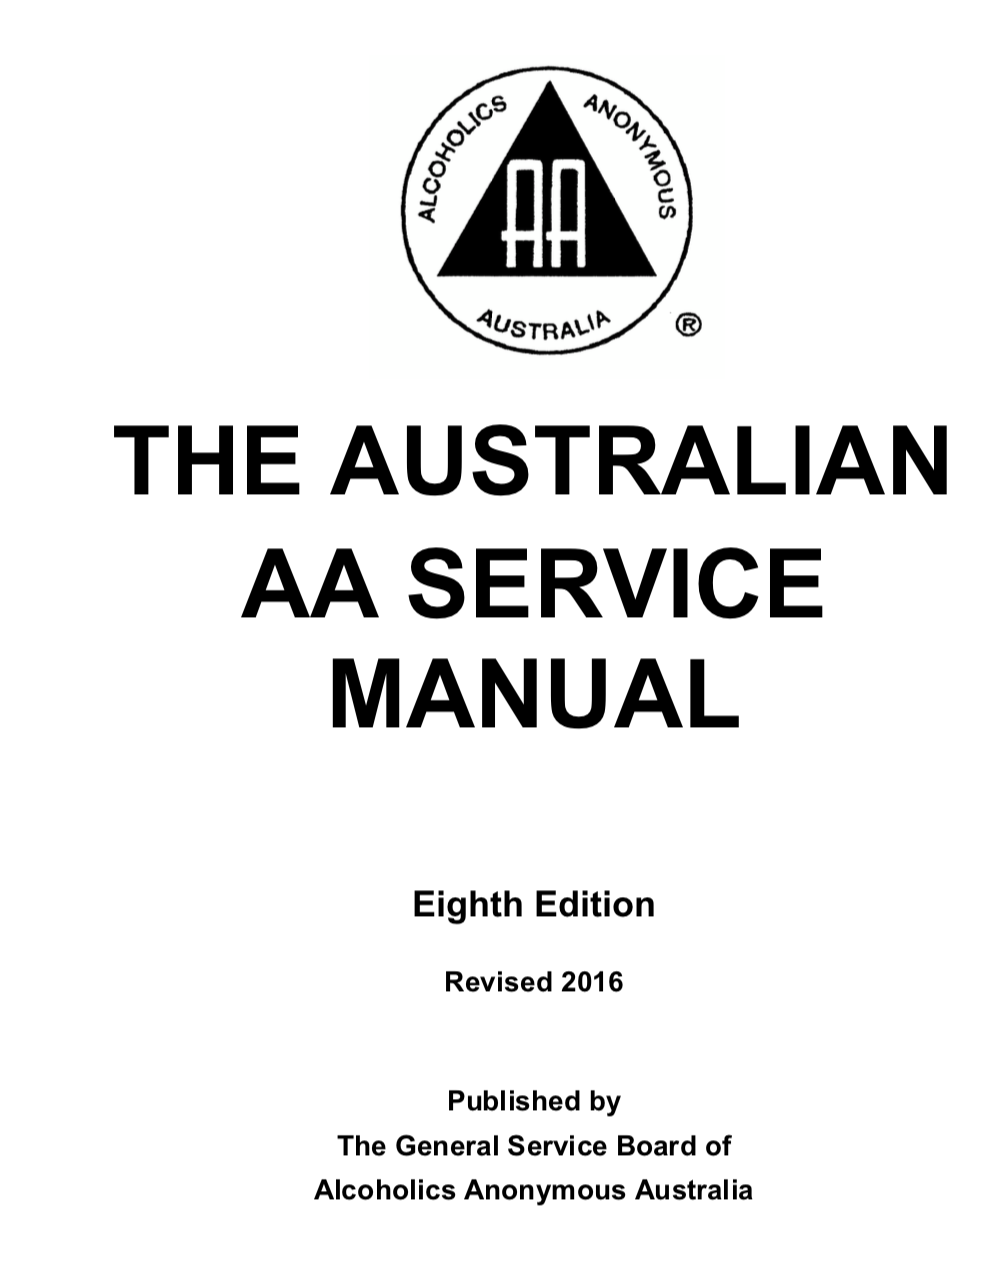 proton aa 2120 service manual